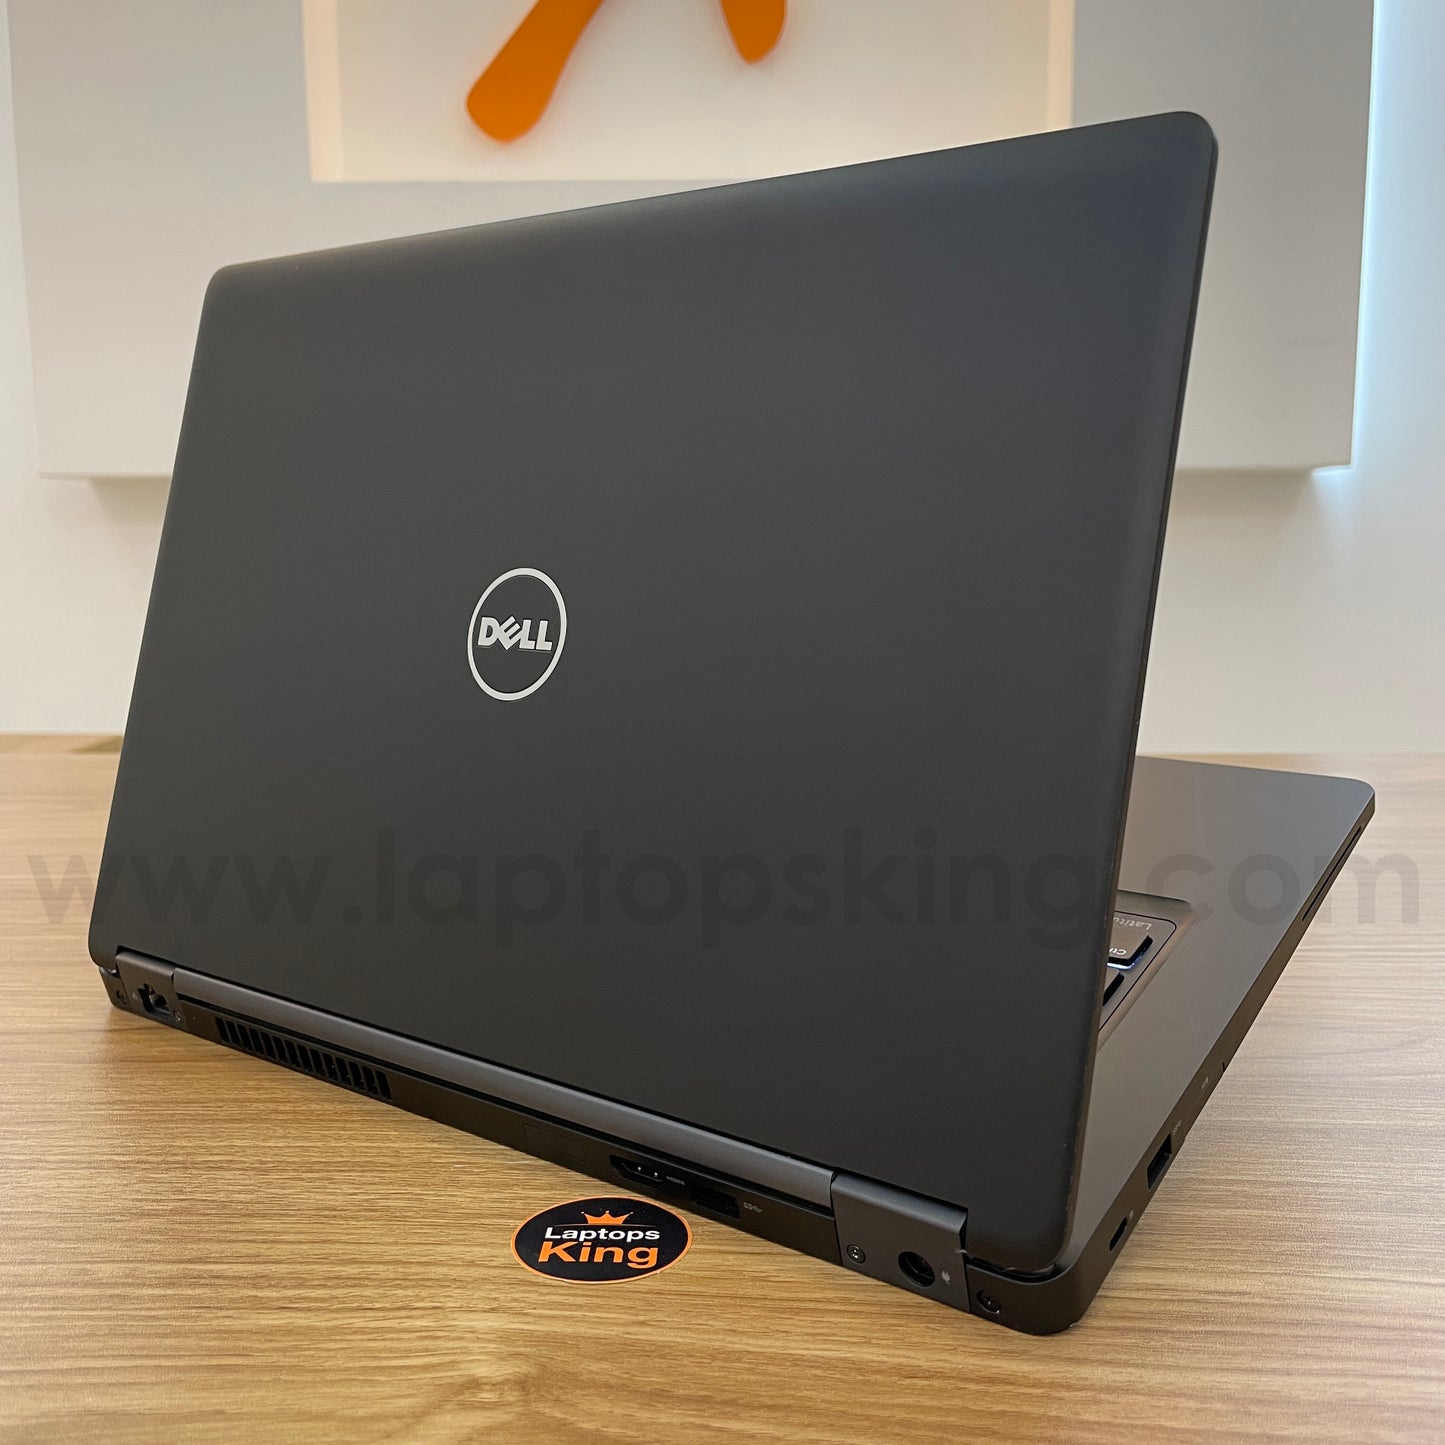 Dell Latitude 5480 Core i7 14" Laptop Offers (Open Box)